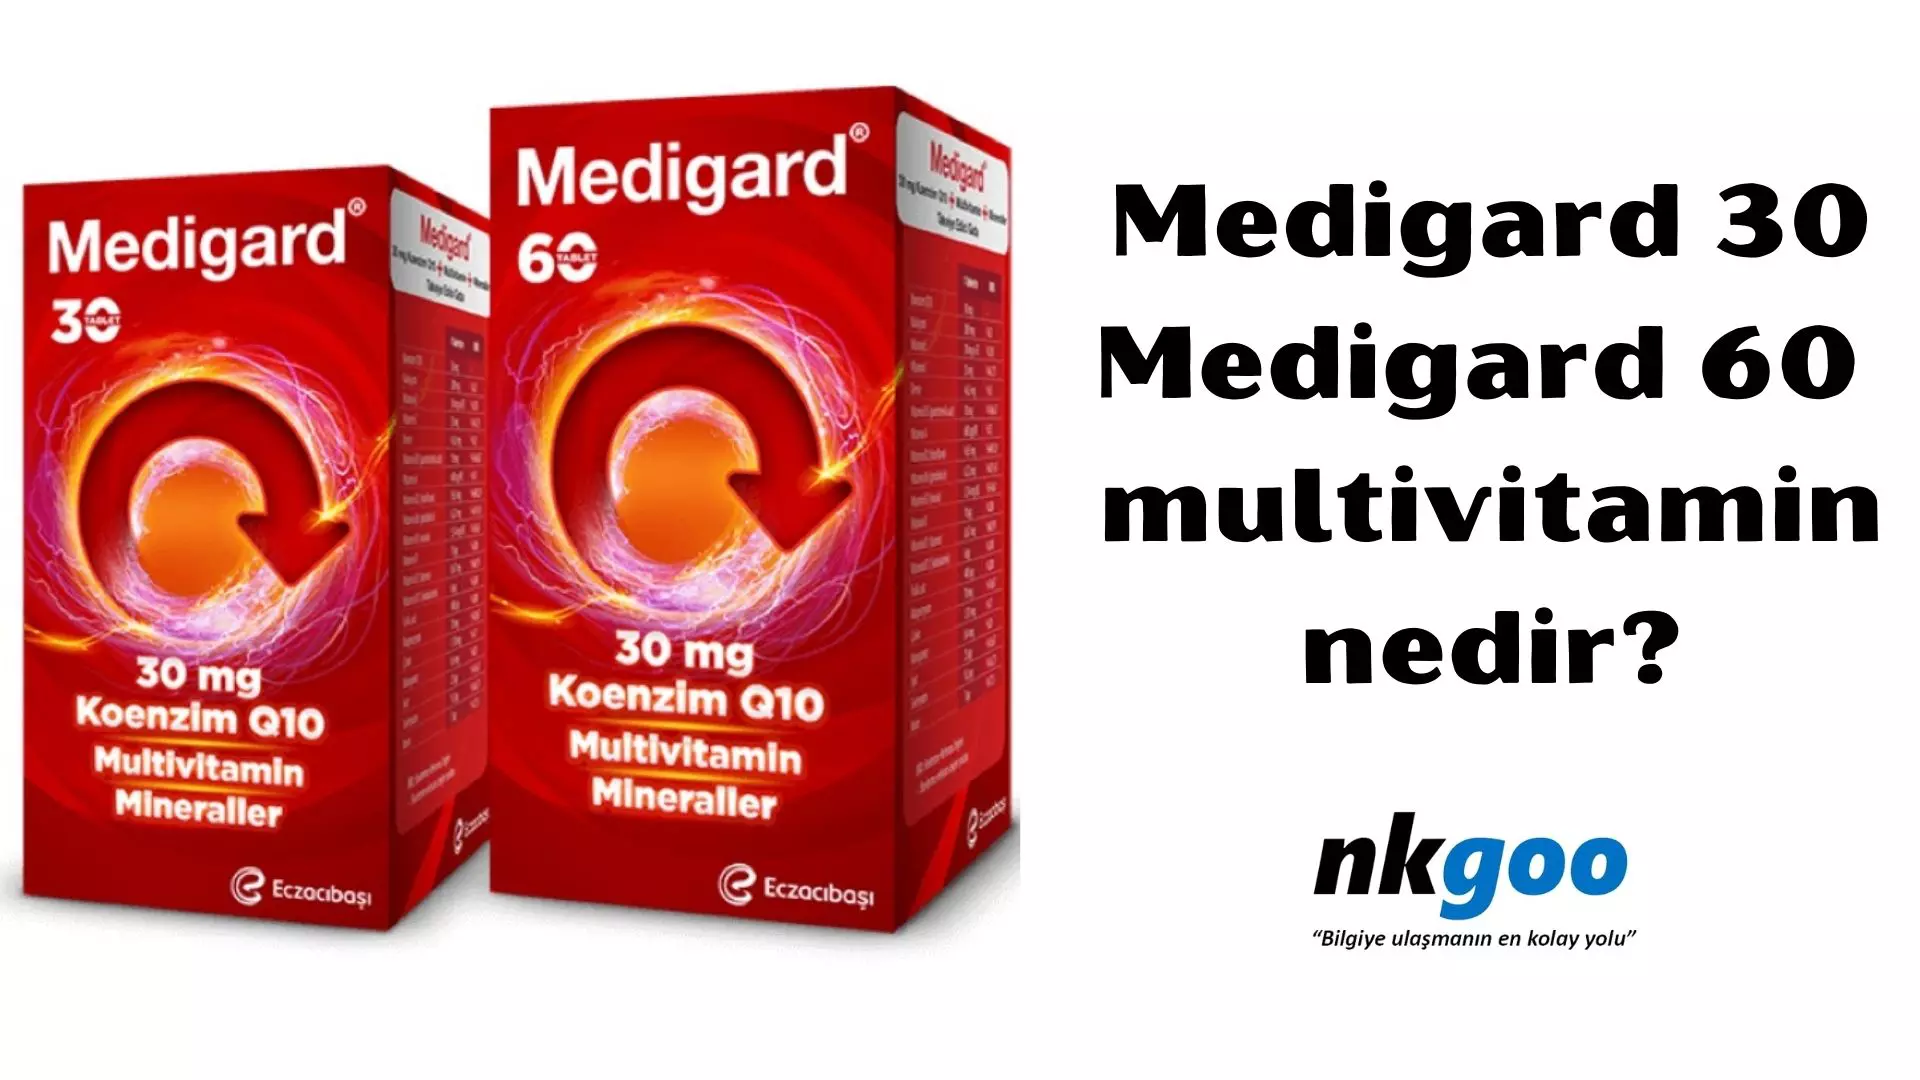 Medigard 30, Medigard 60 vitamin nedir?